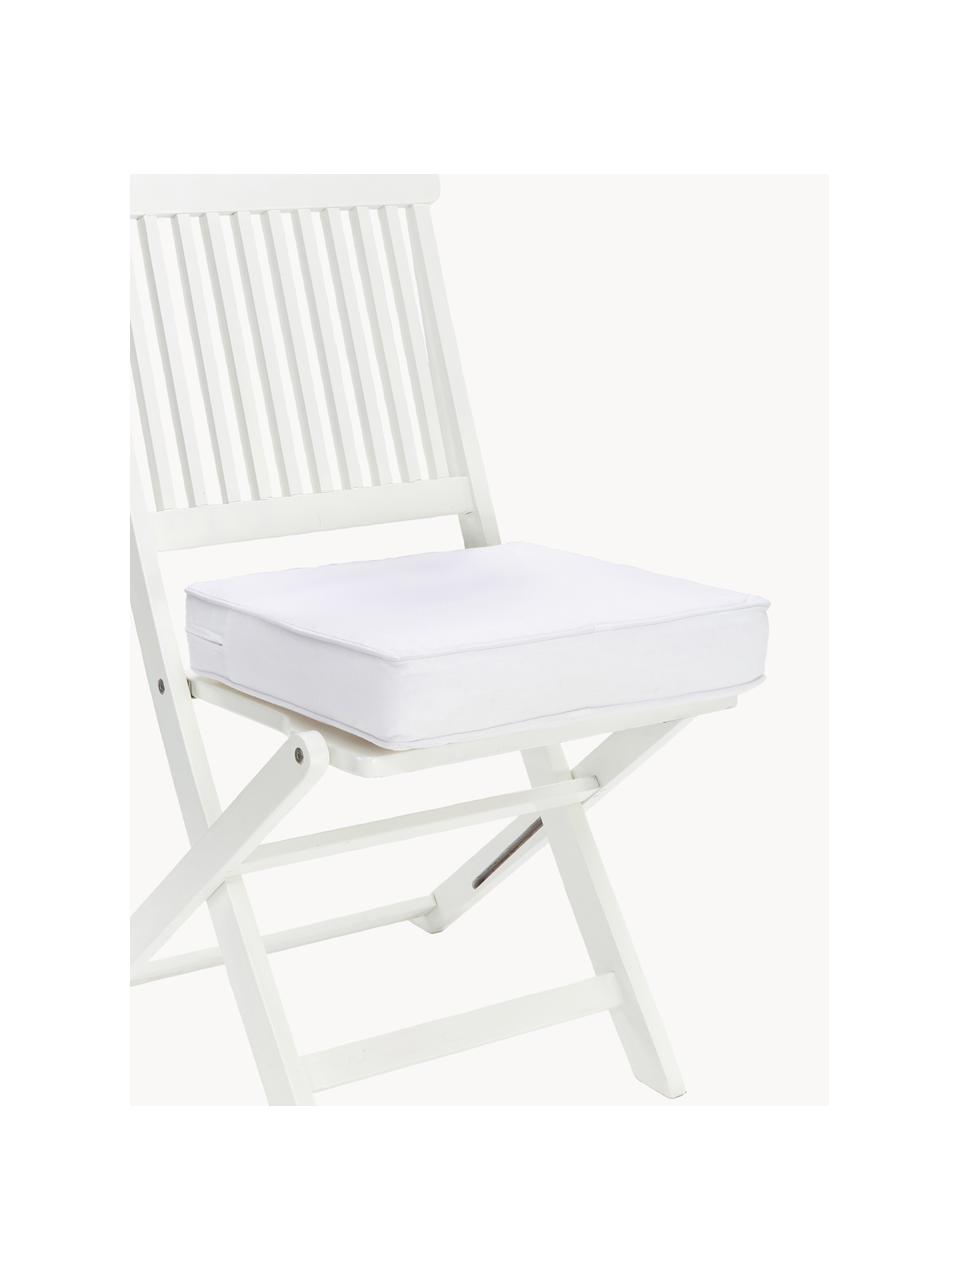 Cuscini sedia alti Zoey 2 pz, Rivestimento: 100% cotone, Bianco, Larg. 40 x Lung. 40 cm